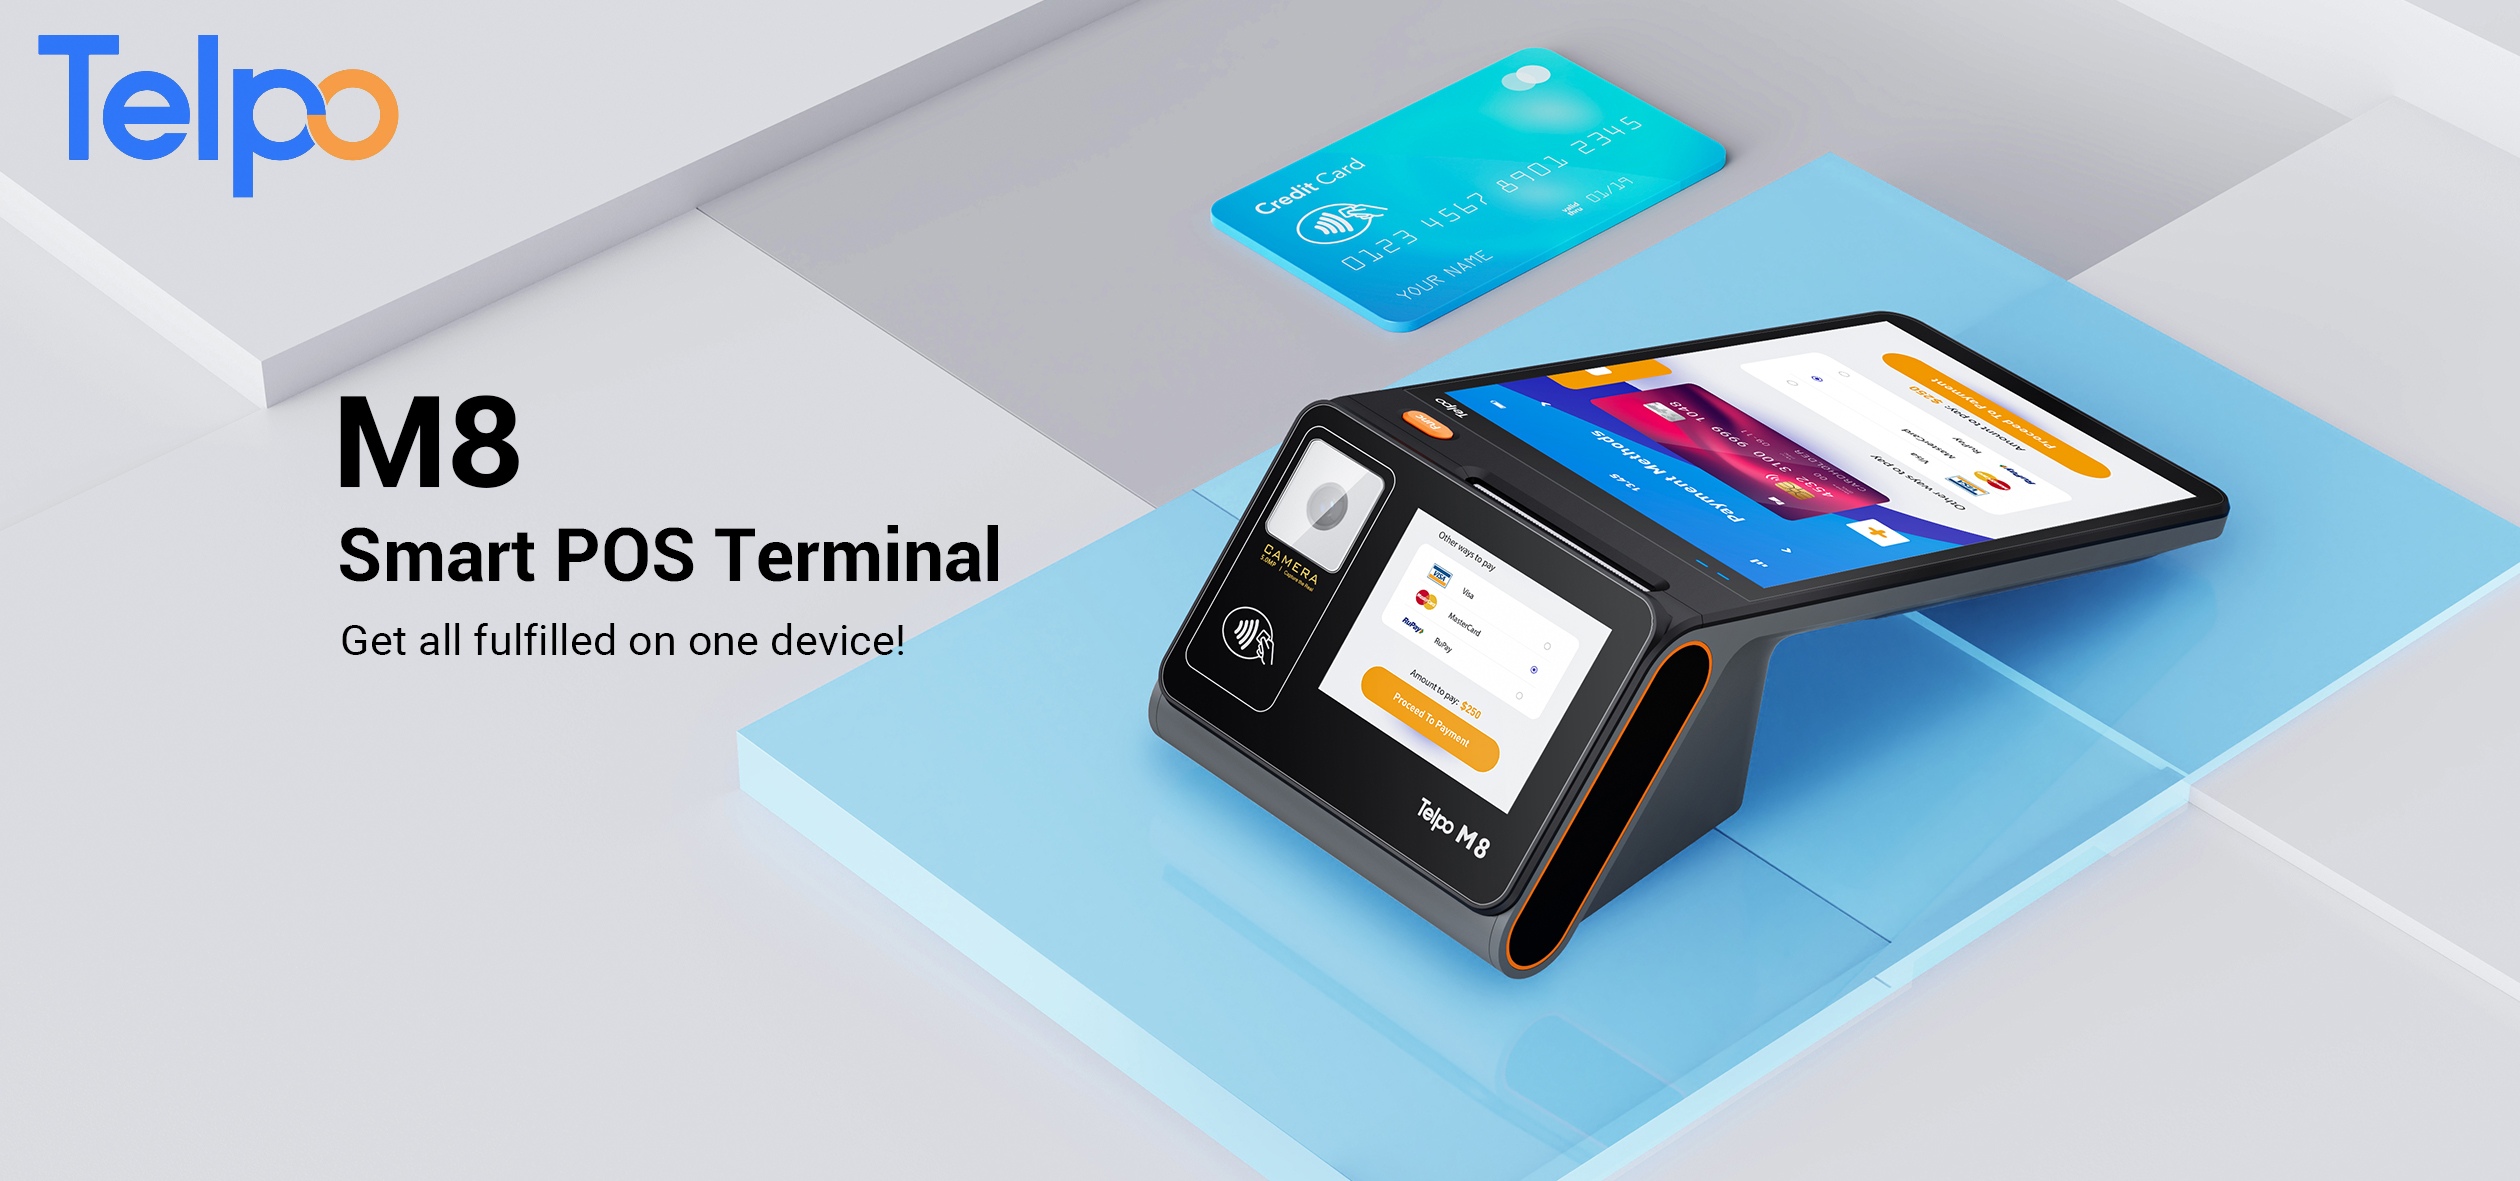 Telpo smart POS terminal